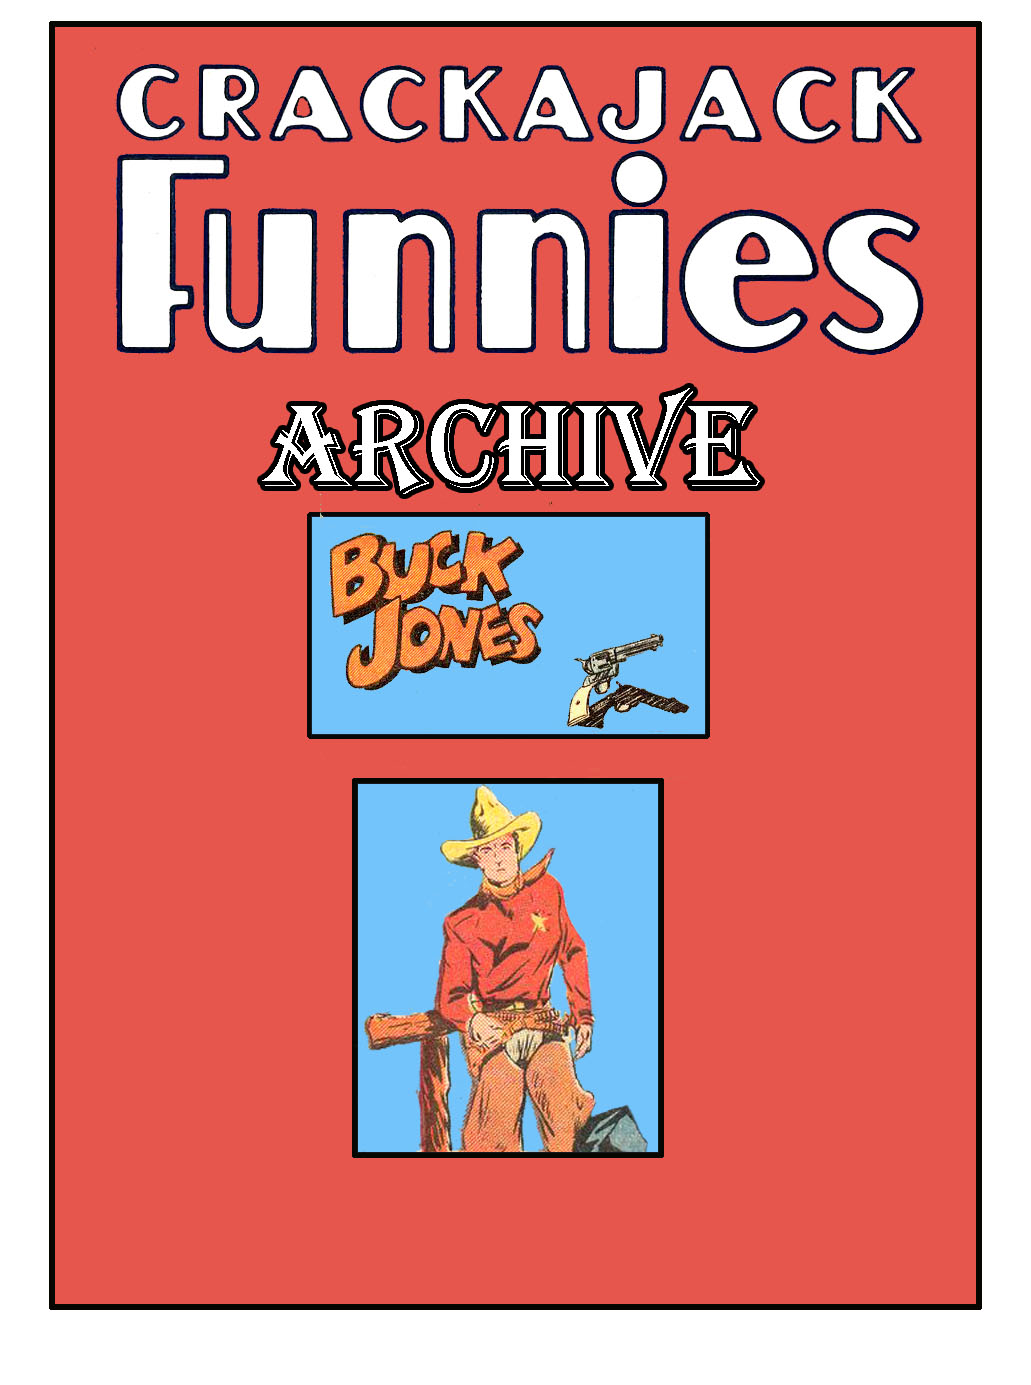 Comic Book Cover For Buck Jones Stories - Crackajack Archive